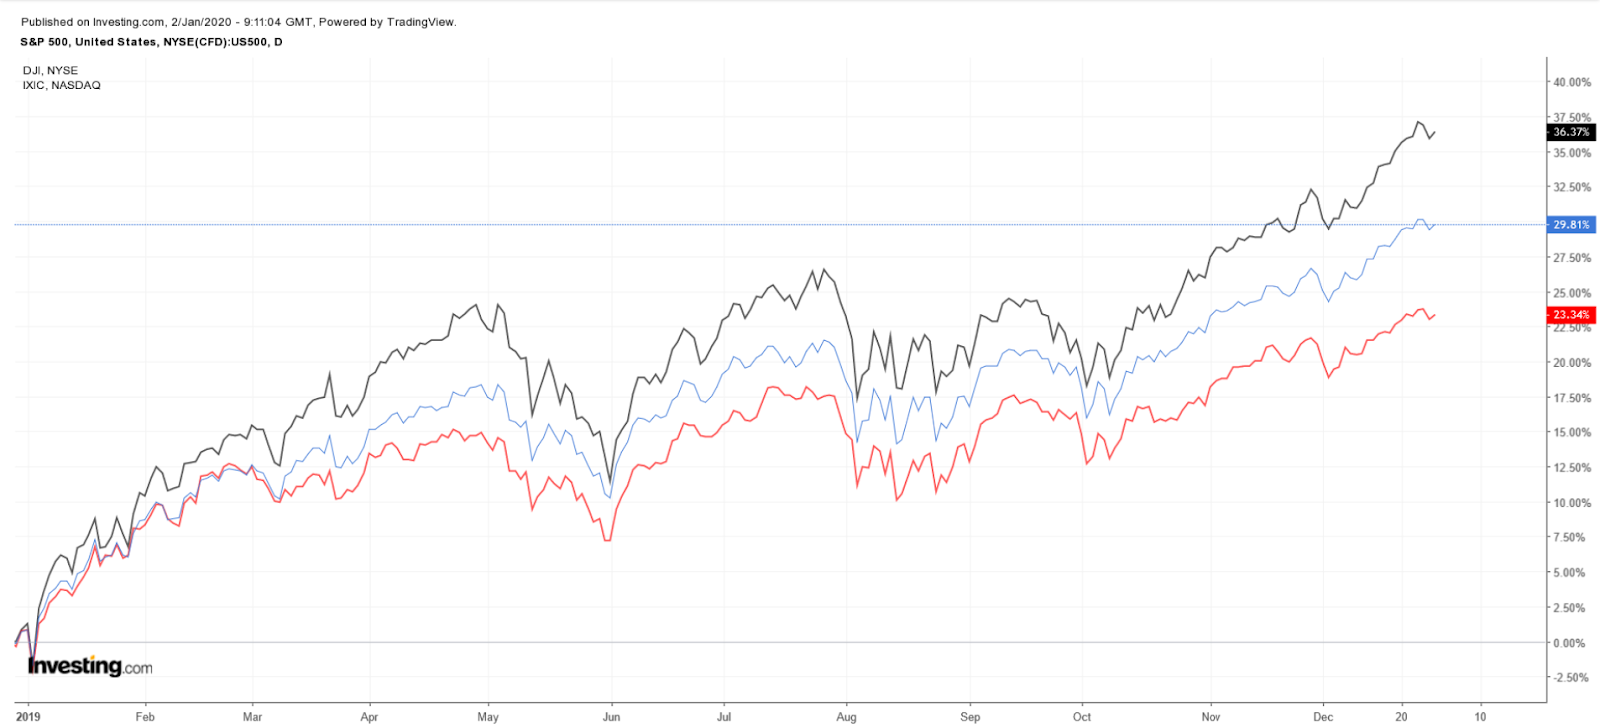 กราฟเปรียบเทียบการวิ่งตลอดทั้งปีของตลาด S&P 500, Dow Jones และ NASDAQ